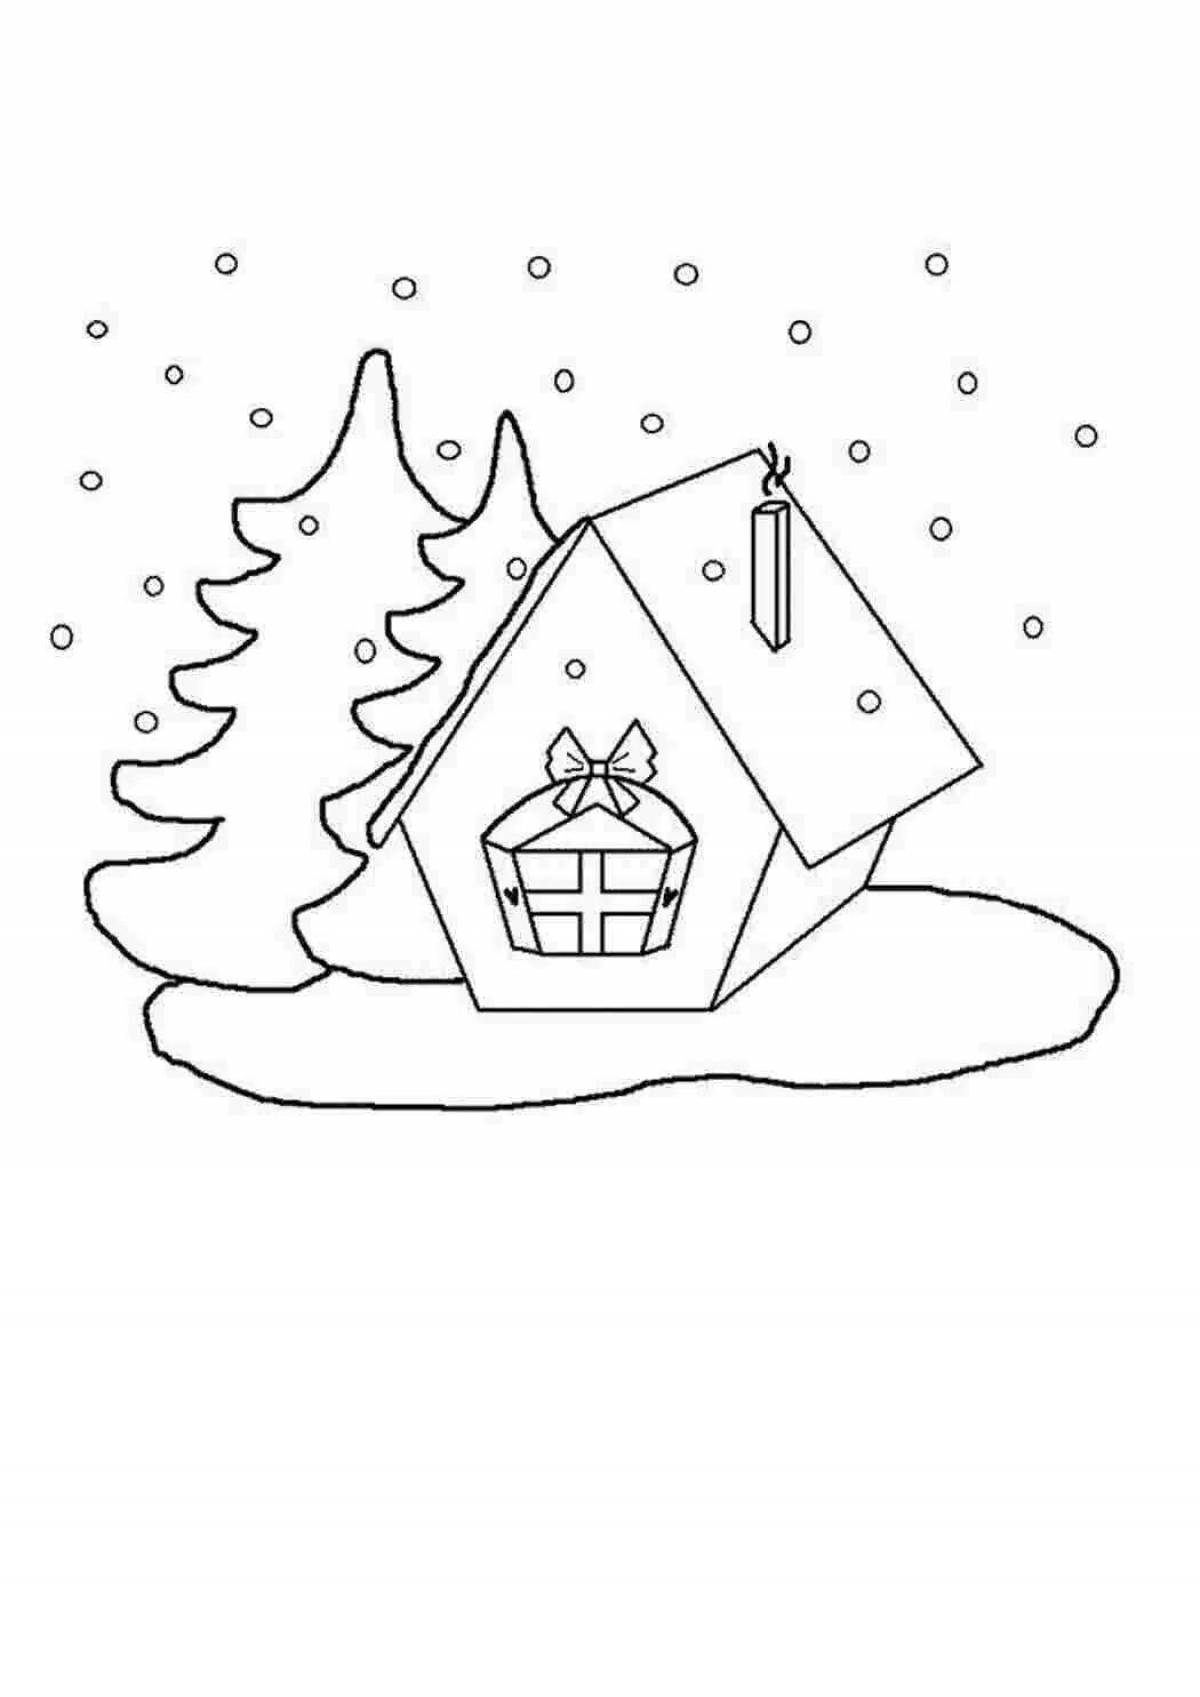 Веселая раскраска «зимний дом» для детей